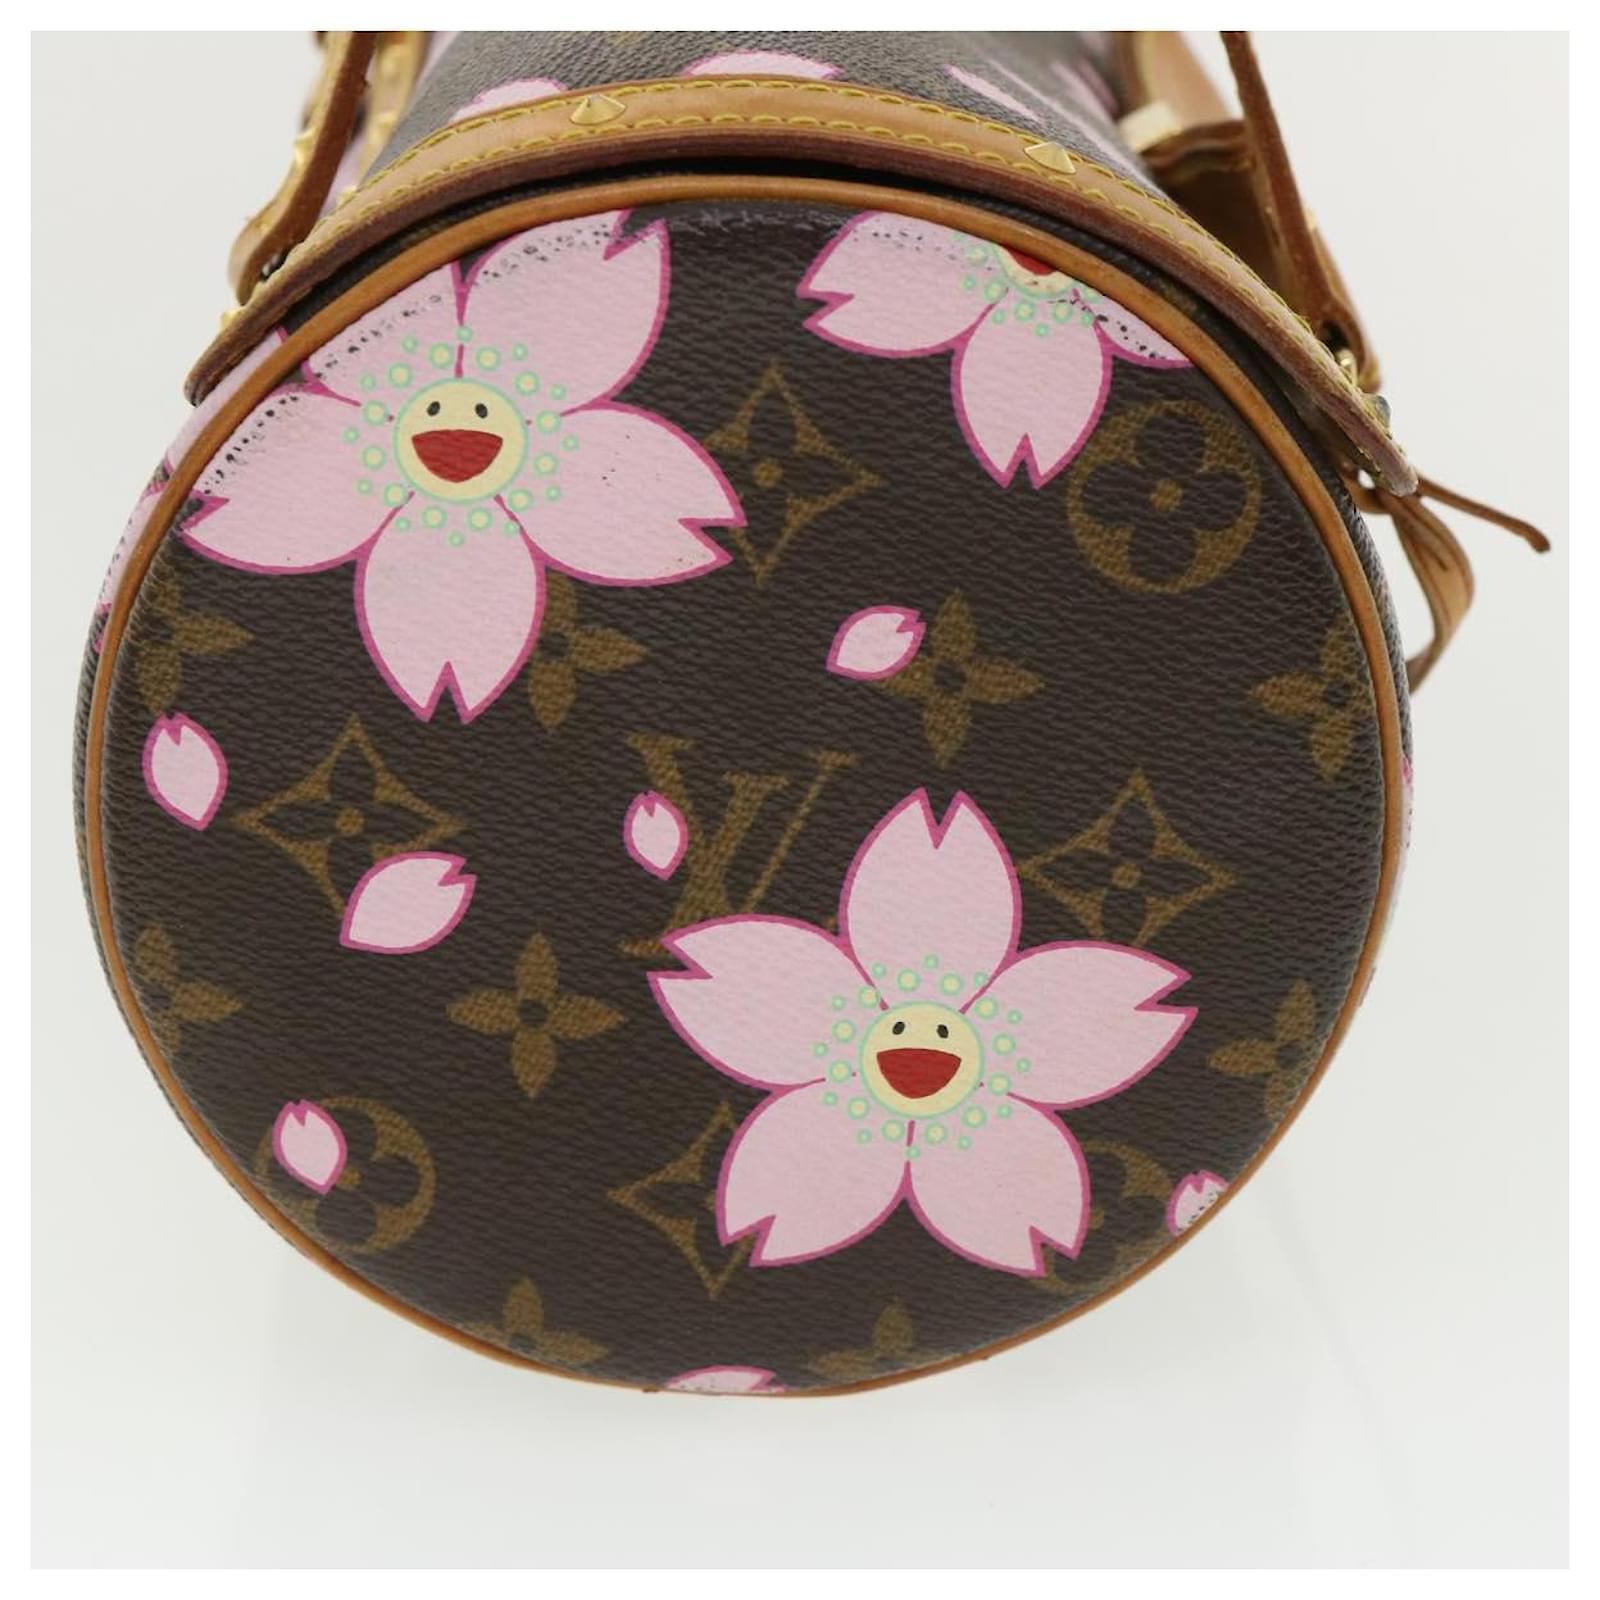 Authentic LOUIS VUITTON Monogram Cherry Blossom Papillon M92009 Bag  #246-000